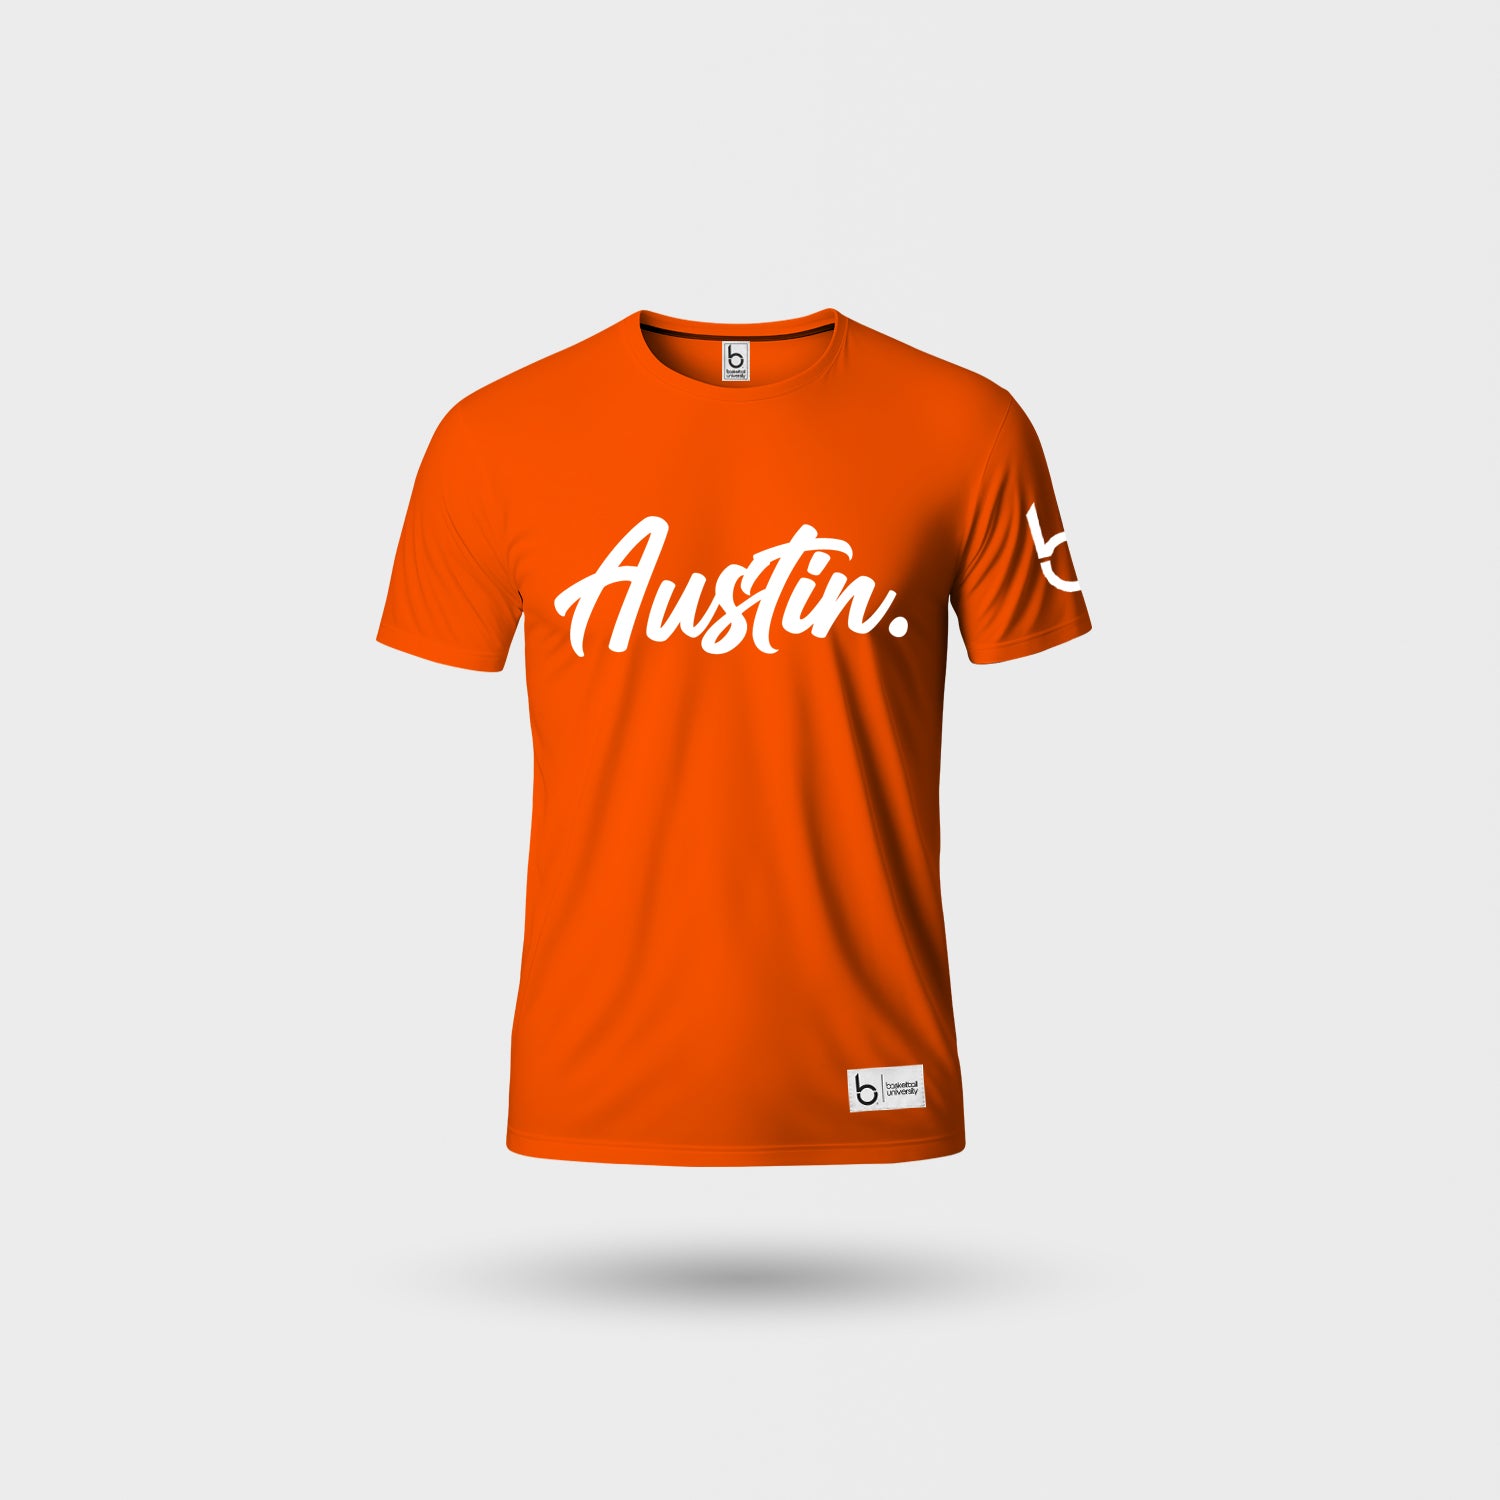 Austin - Hoop City T-Shirt